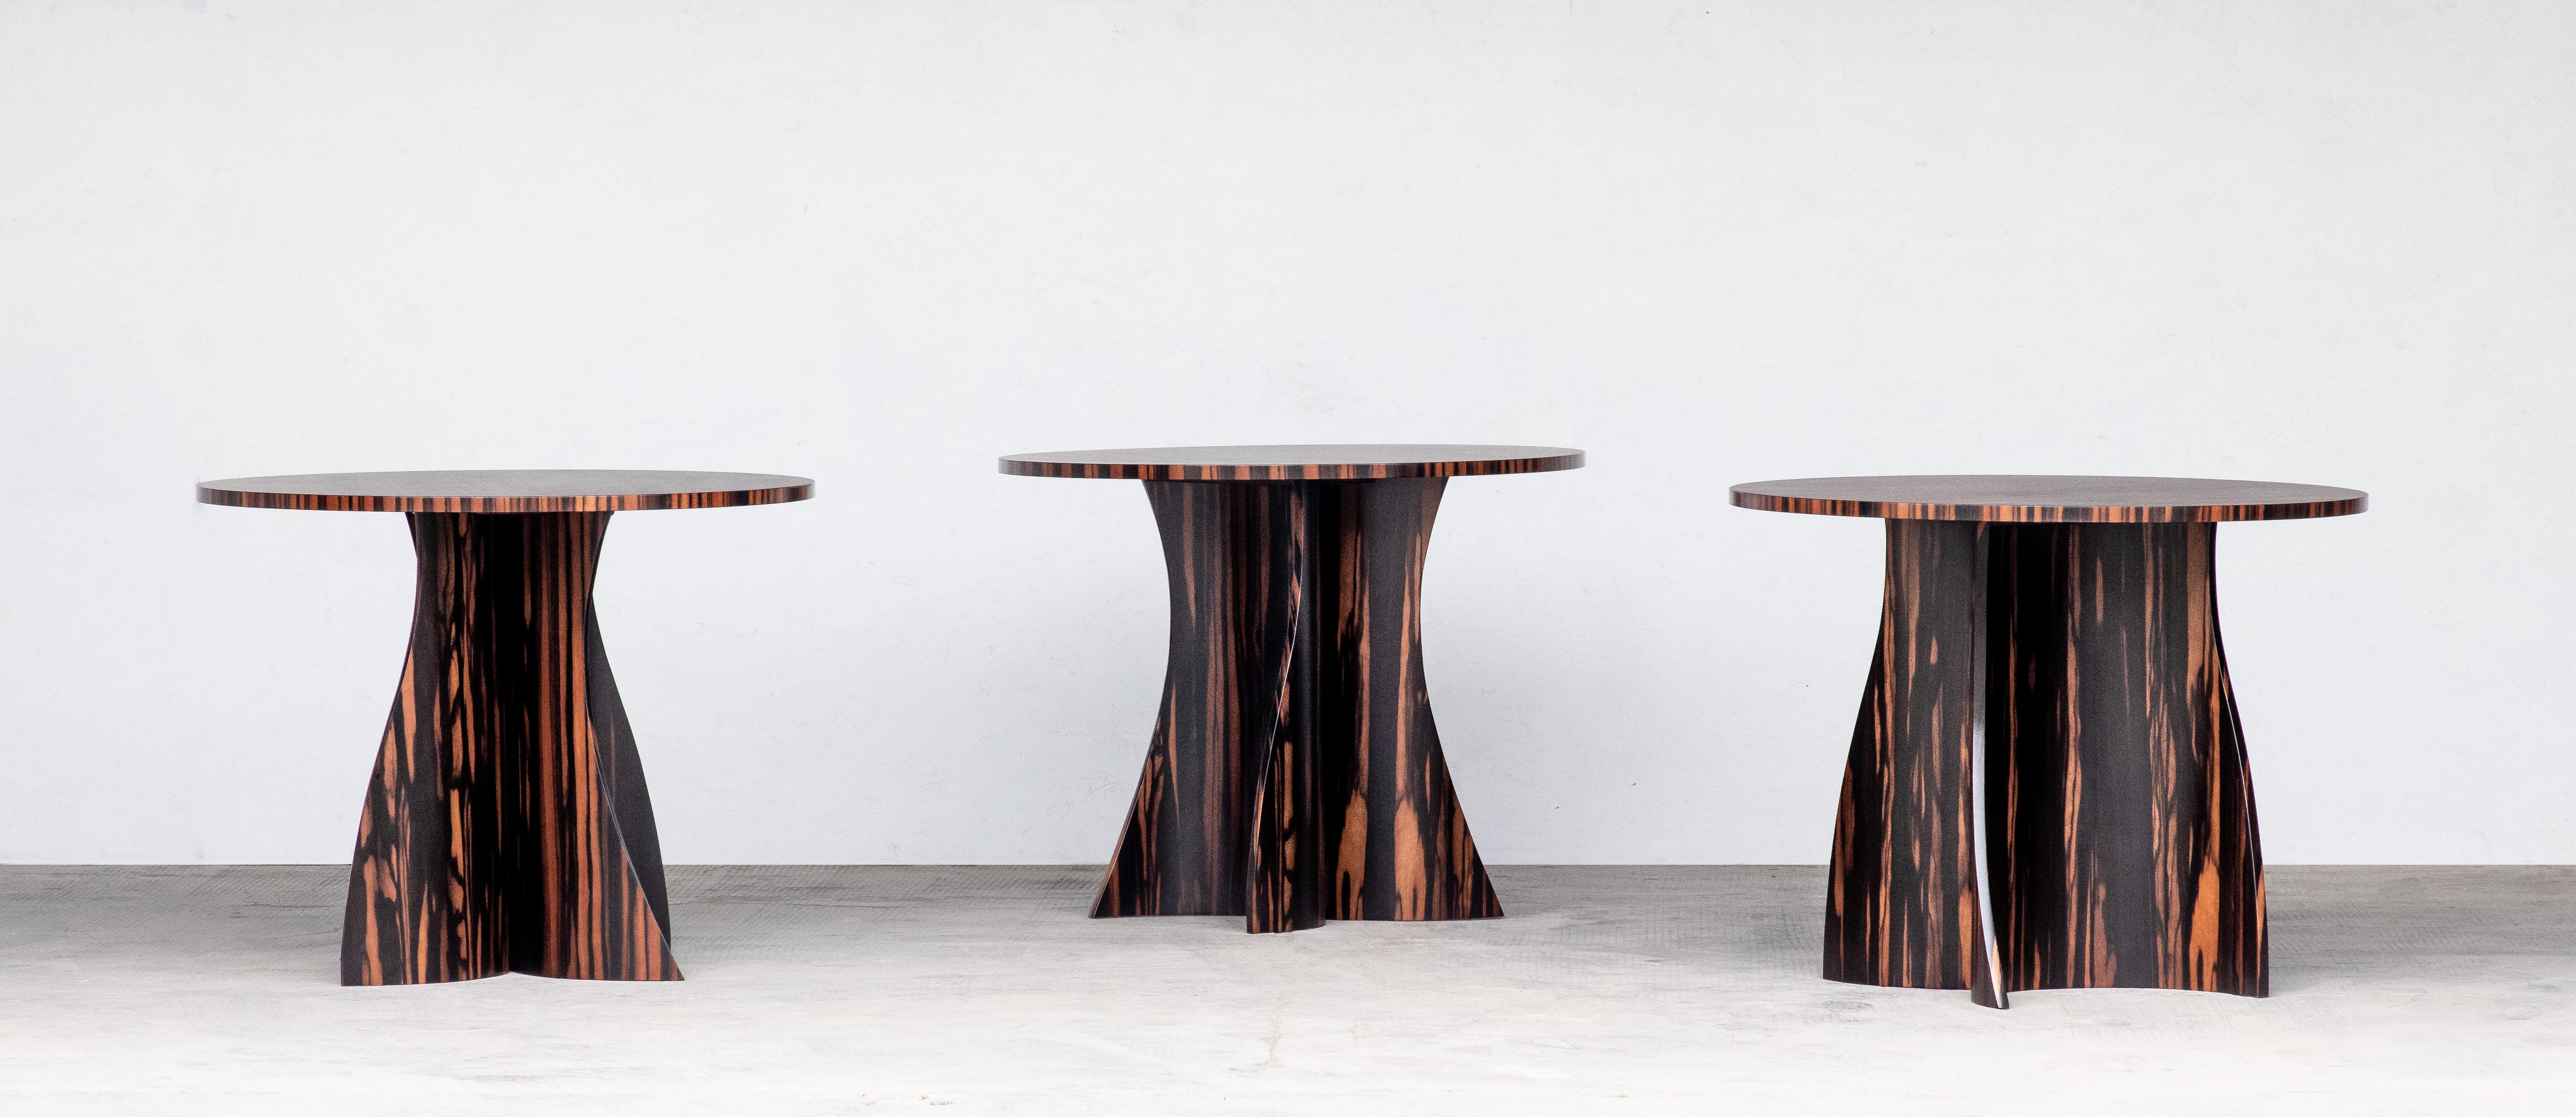 Auf Lager und zur sofortigen Lieferung verfügbar

Der Andino Tisch besteht aus einem zweiteiligen, geschwungenen Holzgestell, dessen Form aus jedem Blickwinkel einzigartig erscheint. Das hier gezeigte Modell aus Makassar-Ebenholz kann in jeder Größe